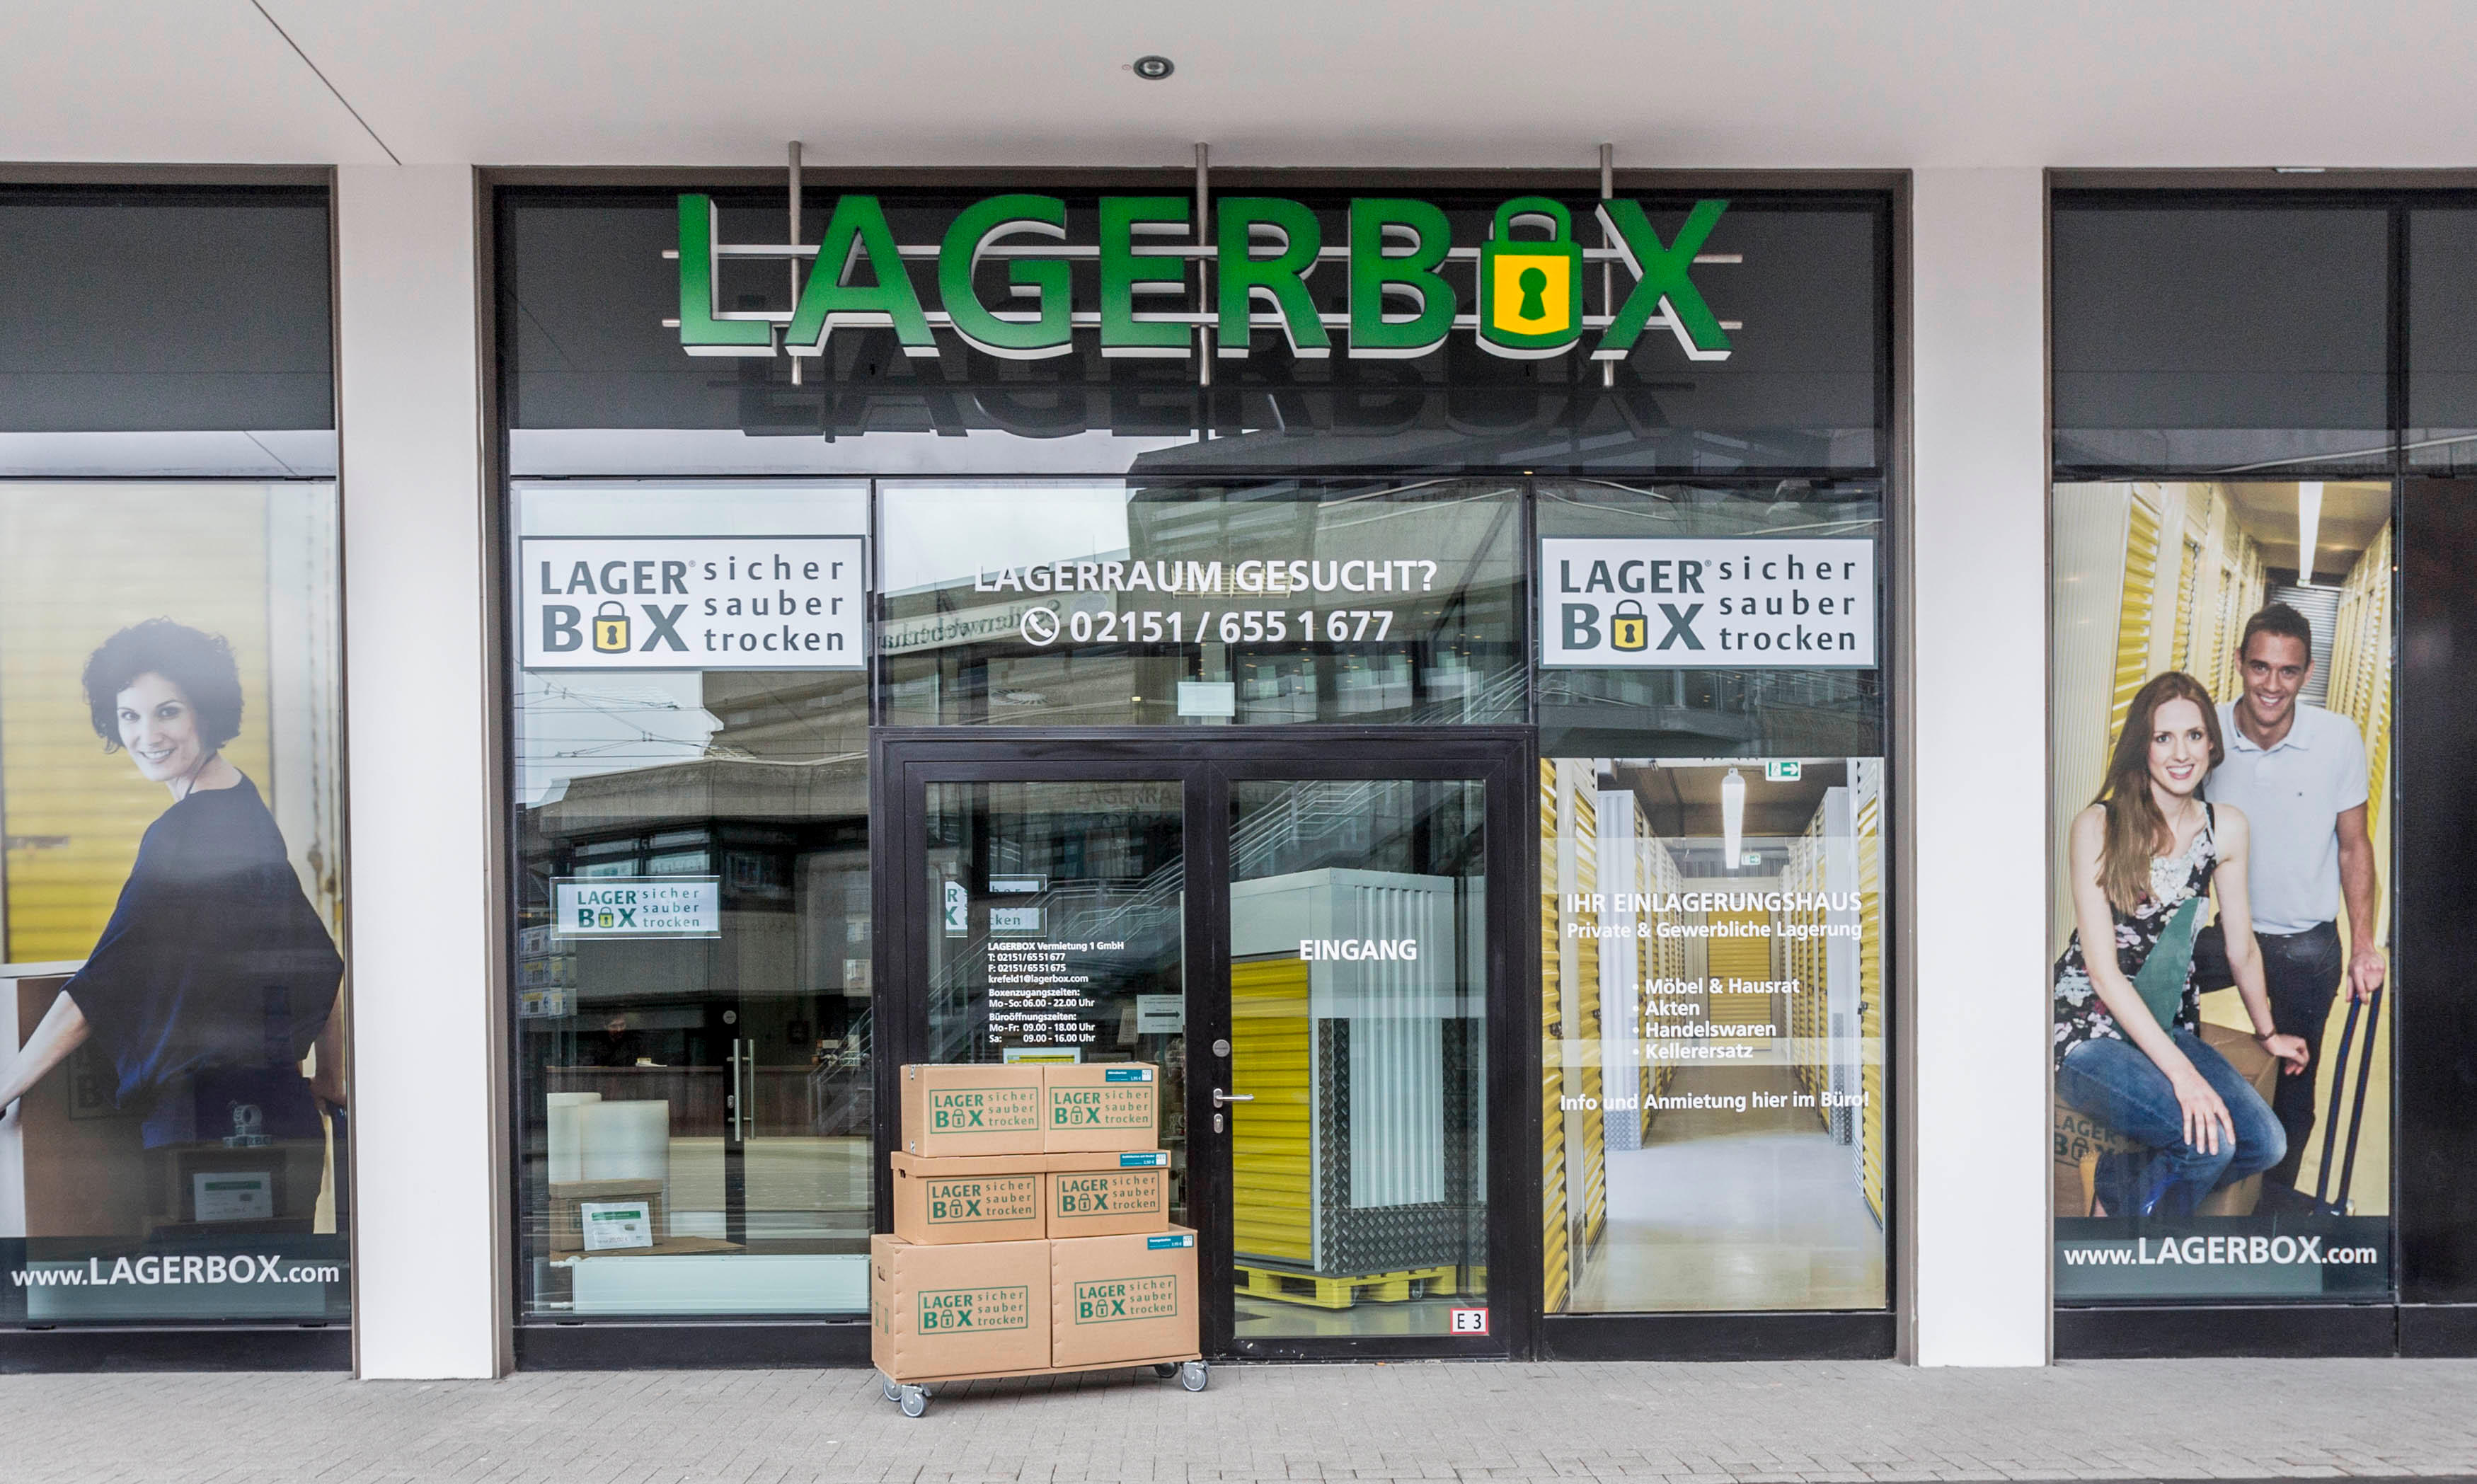 LAGERBOX Krefeld, Sankt-Anton-Straße 48 in Krefeld